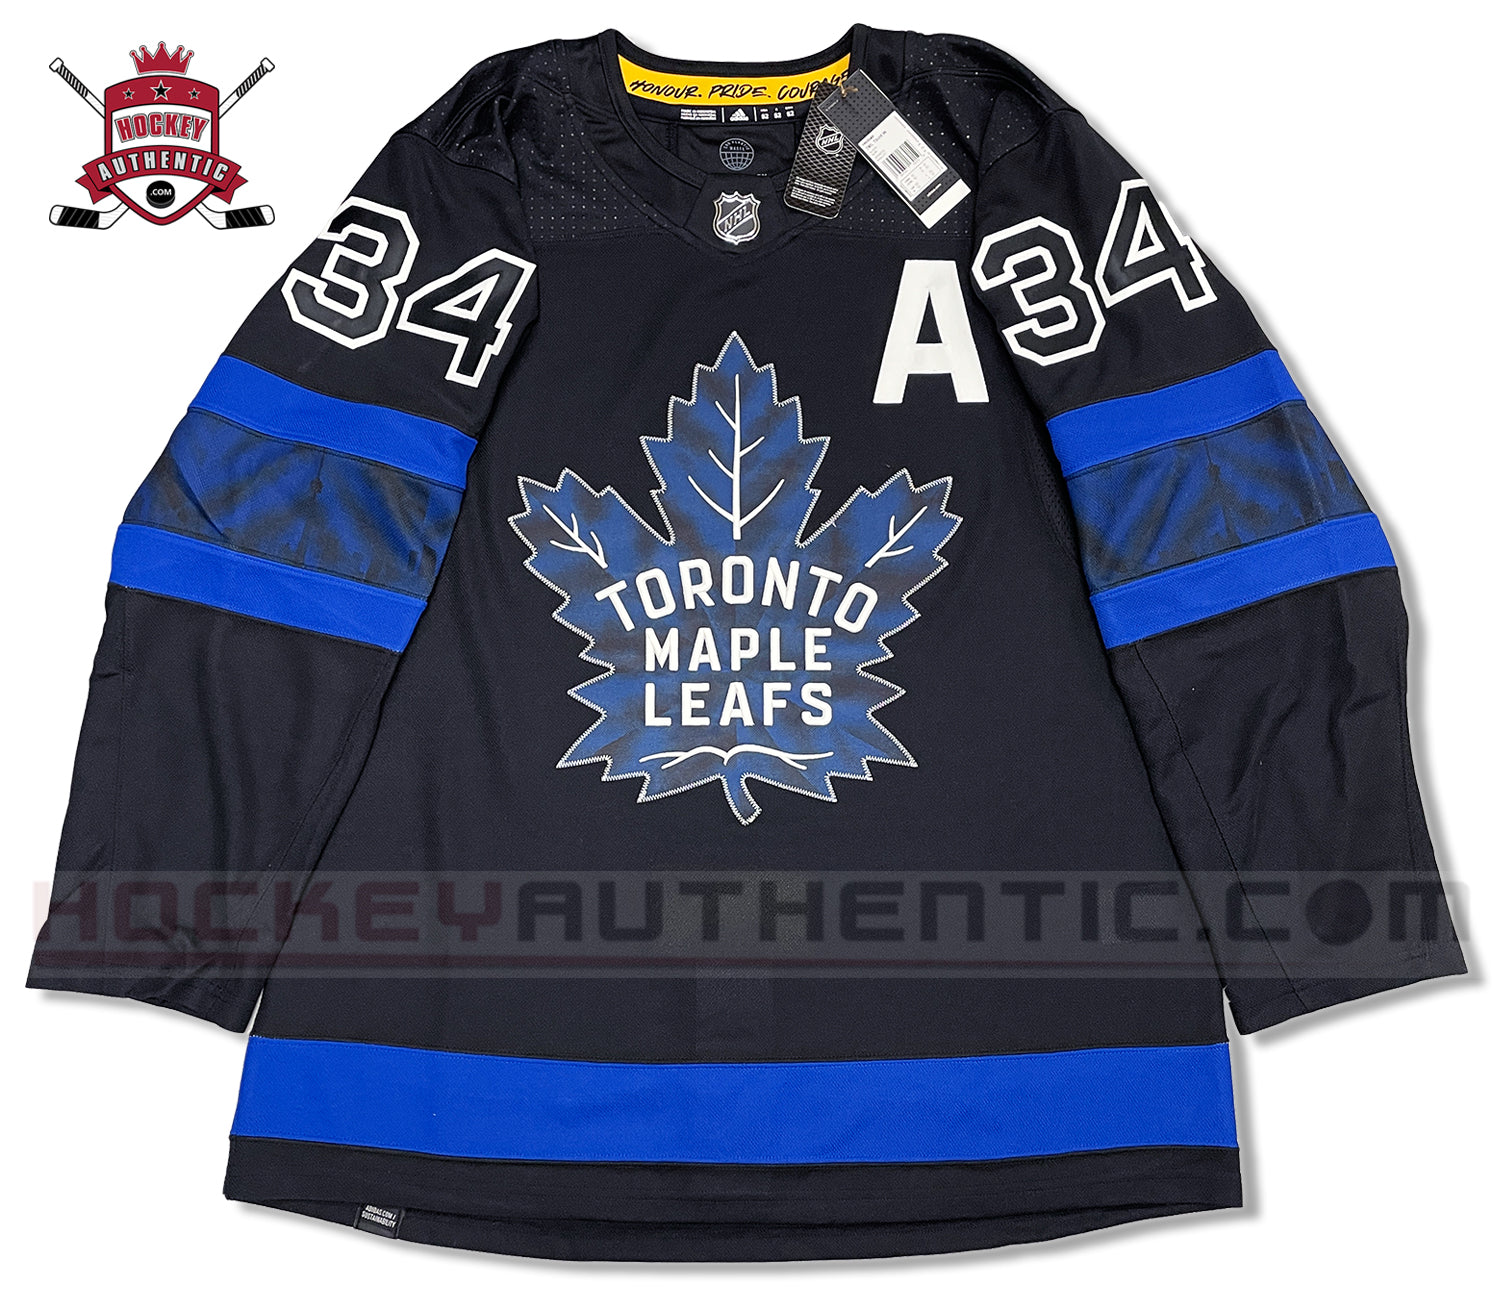 Adidas White Toronto Maple Leafs Auston Matthews Game Issued